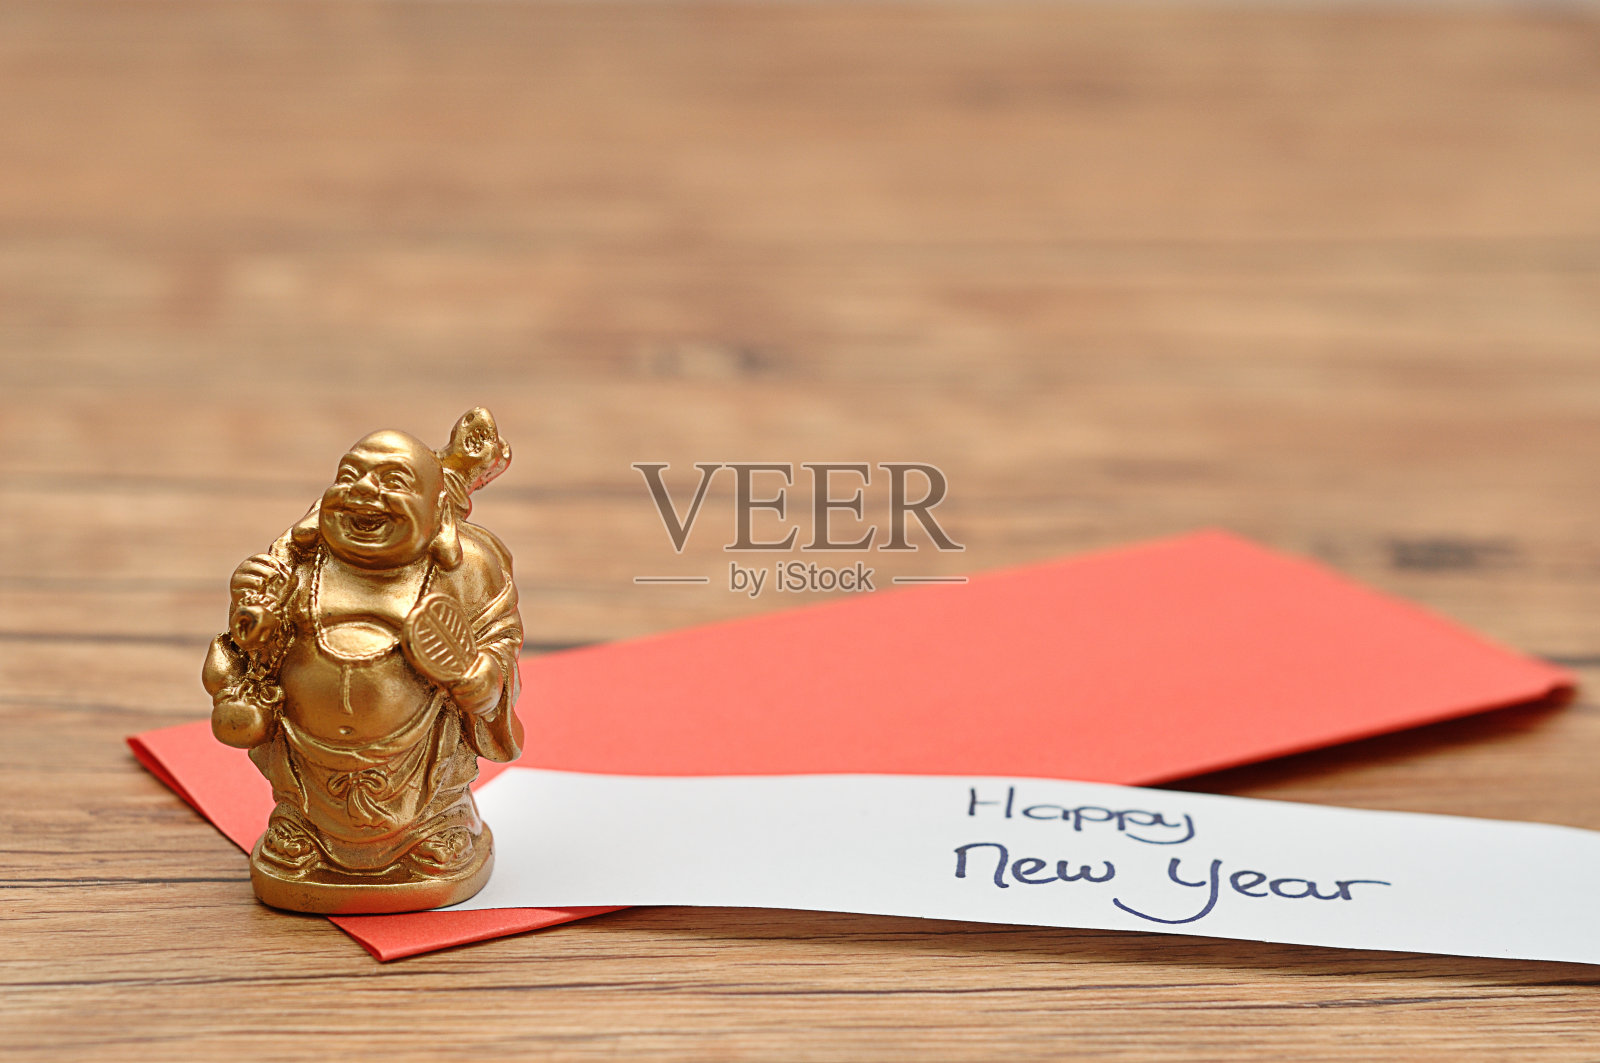 中国新年设计。春节的红包和一张新年快乐的纸条照片摄影图片